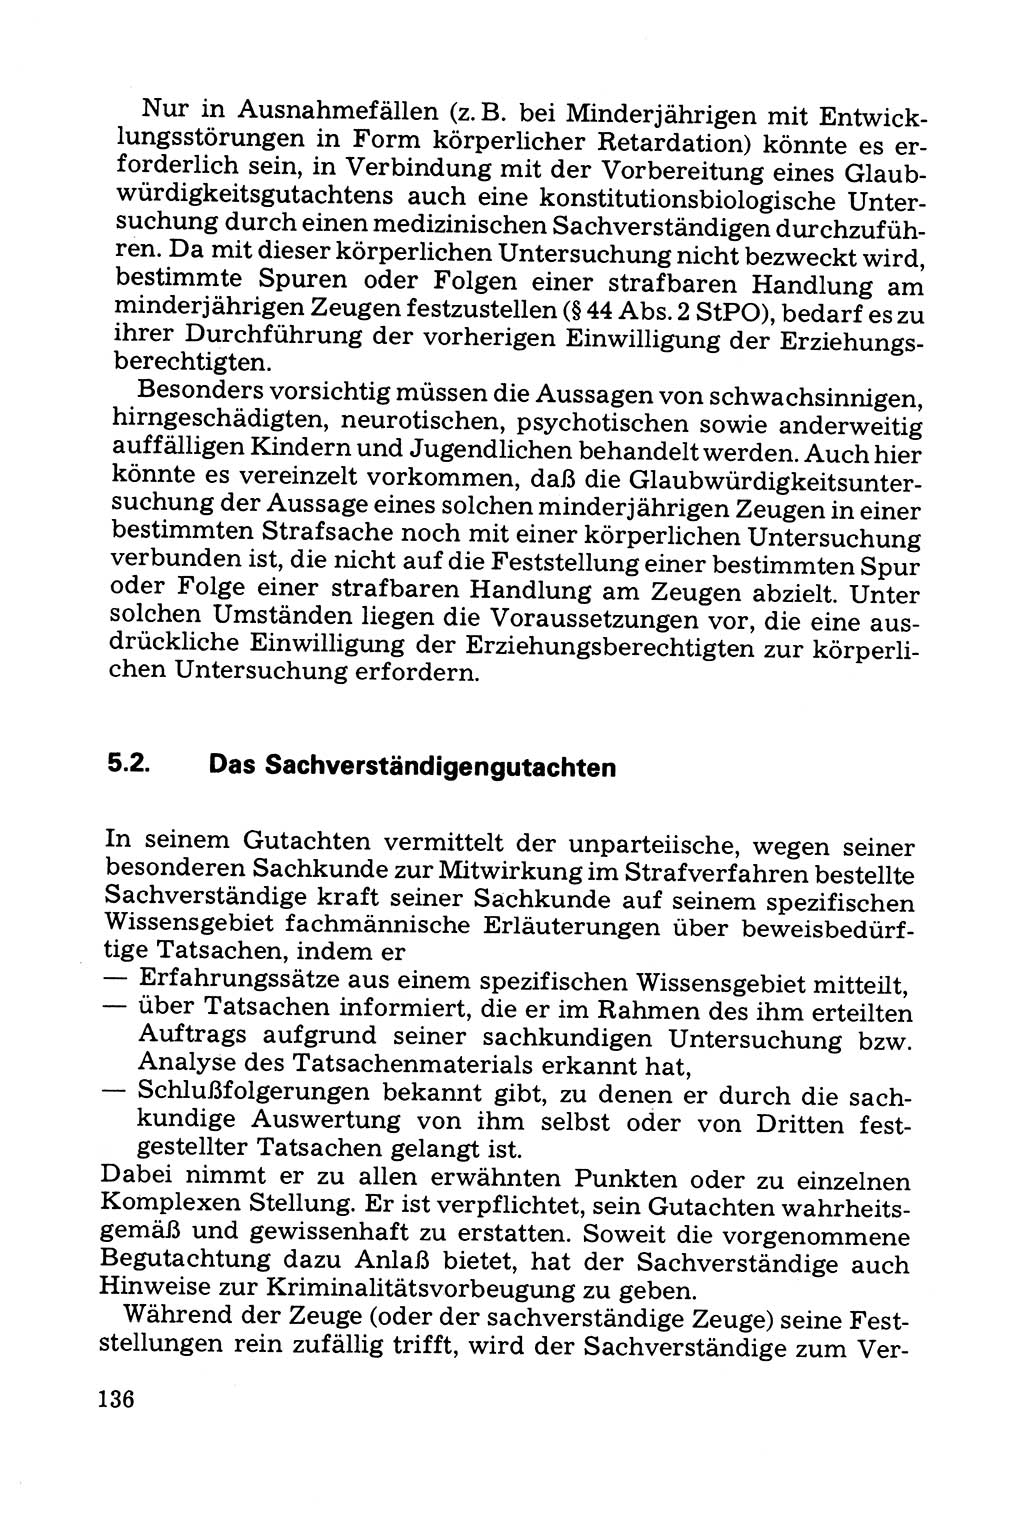 Grundfragen der Beweisführung im Ermittlungsverfahren [Deutsche Demokratische Republik (DDR)] 1980, Seite 136 (Bws.-Fhrg. EV DDR 1980, S. 136)